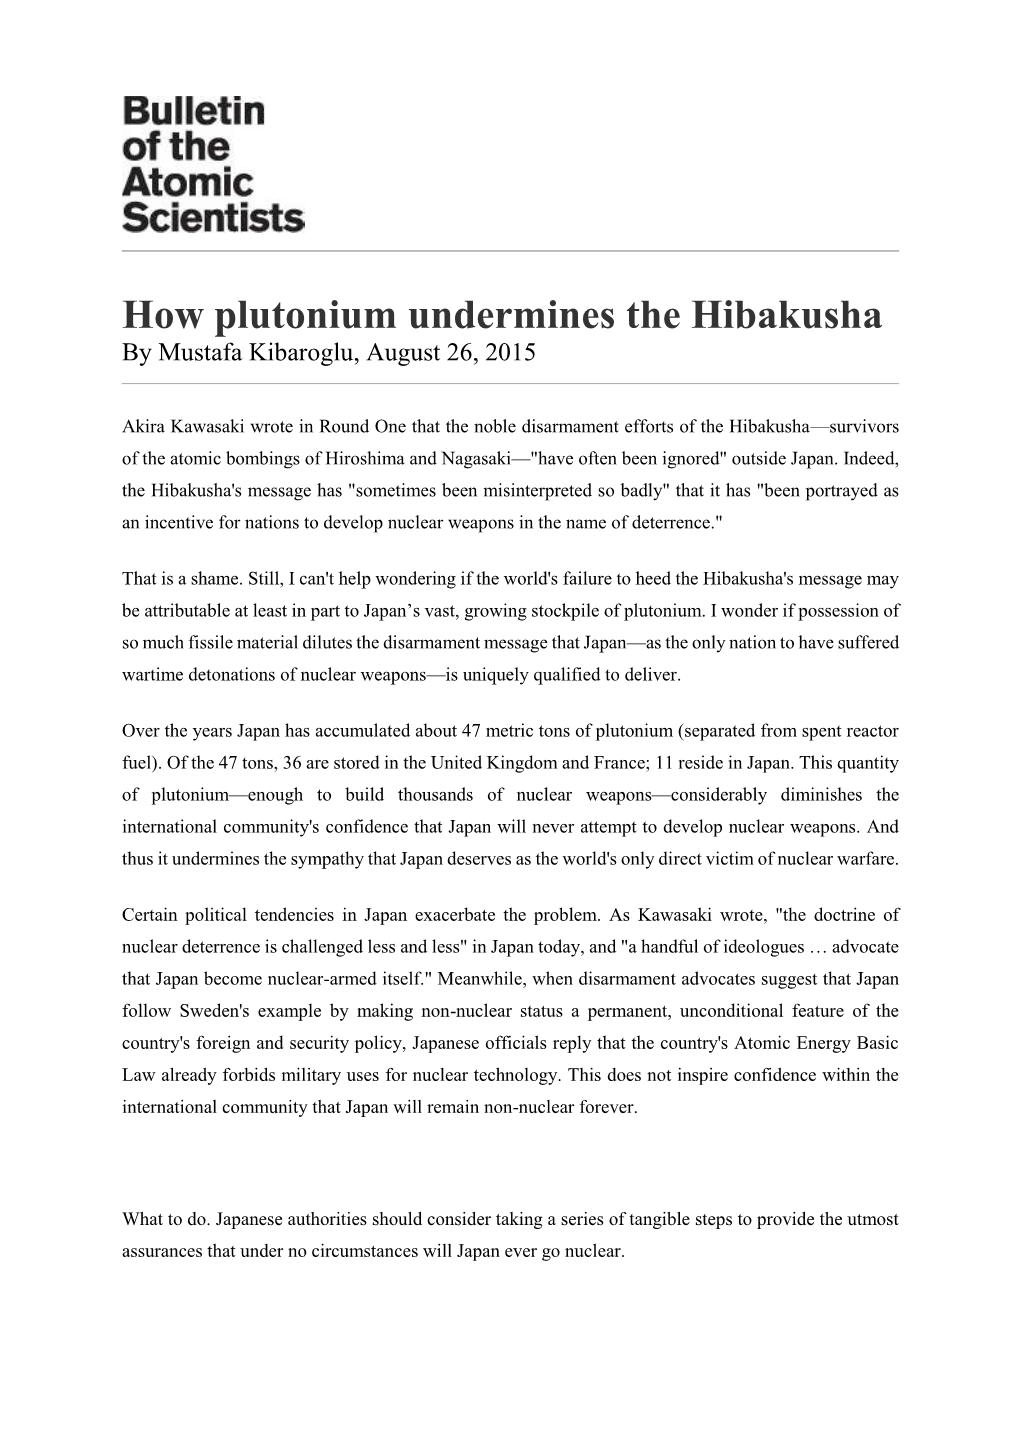 How Plutonium Undermines the Hibakusha by Mustafa Kibaroglu, August 26, 2015